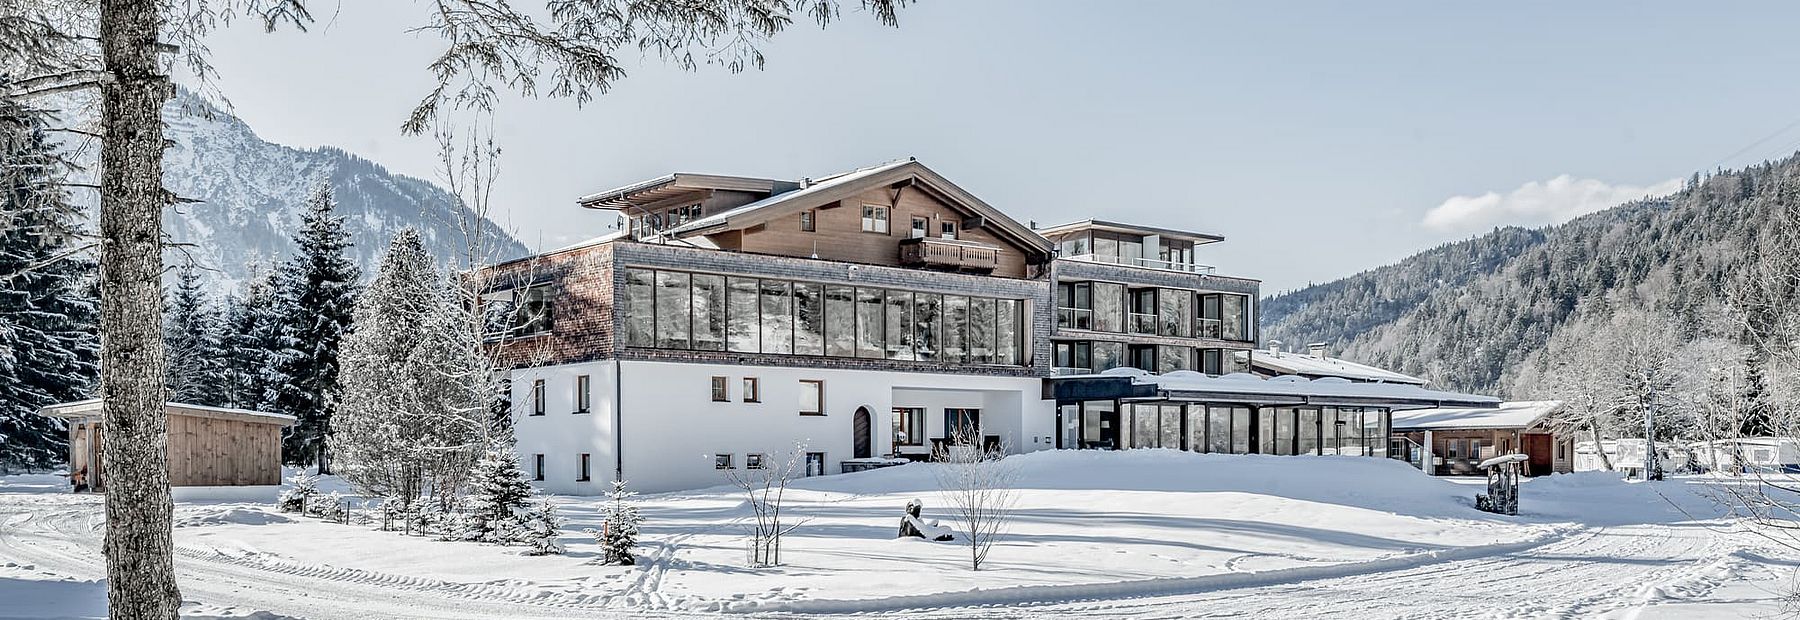 Hotel Fischer am See in verschneiter Winterlandschaft und Bergpanorama